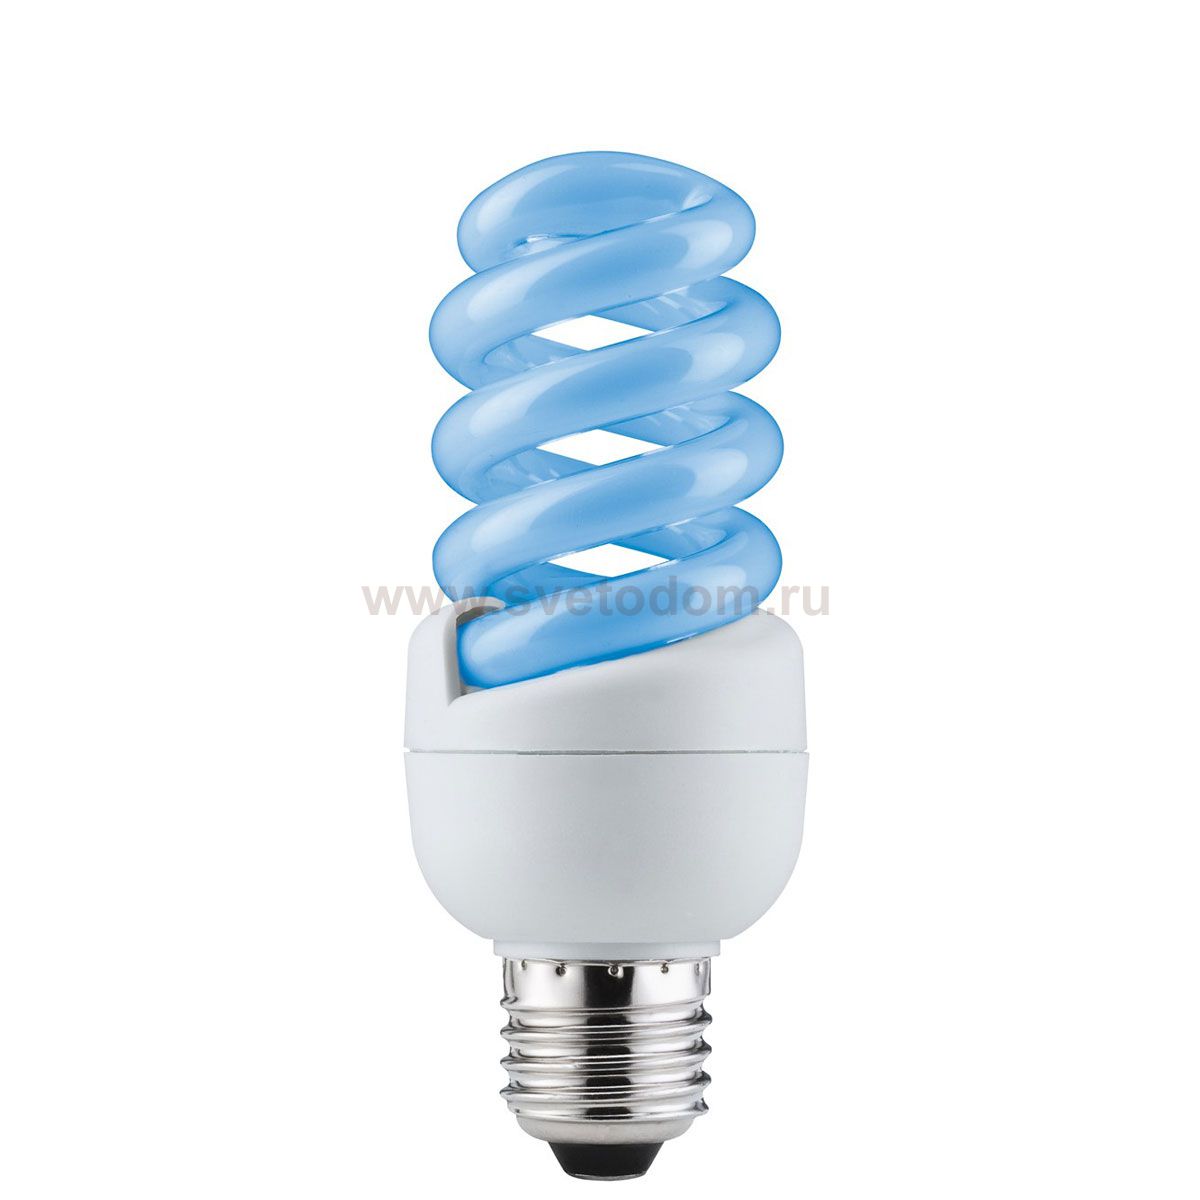 Экономичные лампы. Лампа энергосберегающая е27. Лампа накаливания Paulmann 25063, e27, r80, 60вт. Вес энергосберегающей лампы е27. Лампа е27 энергосберегающая синяя.